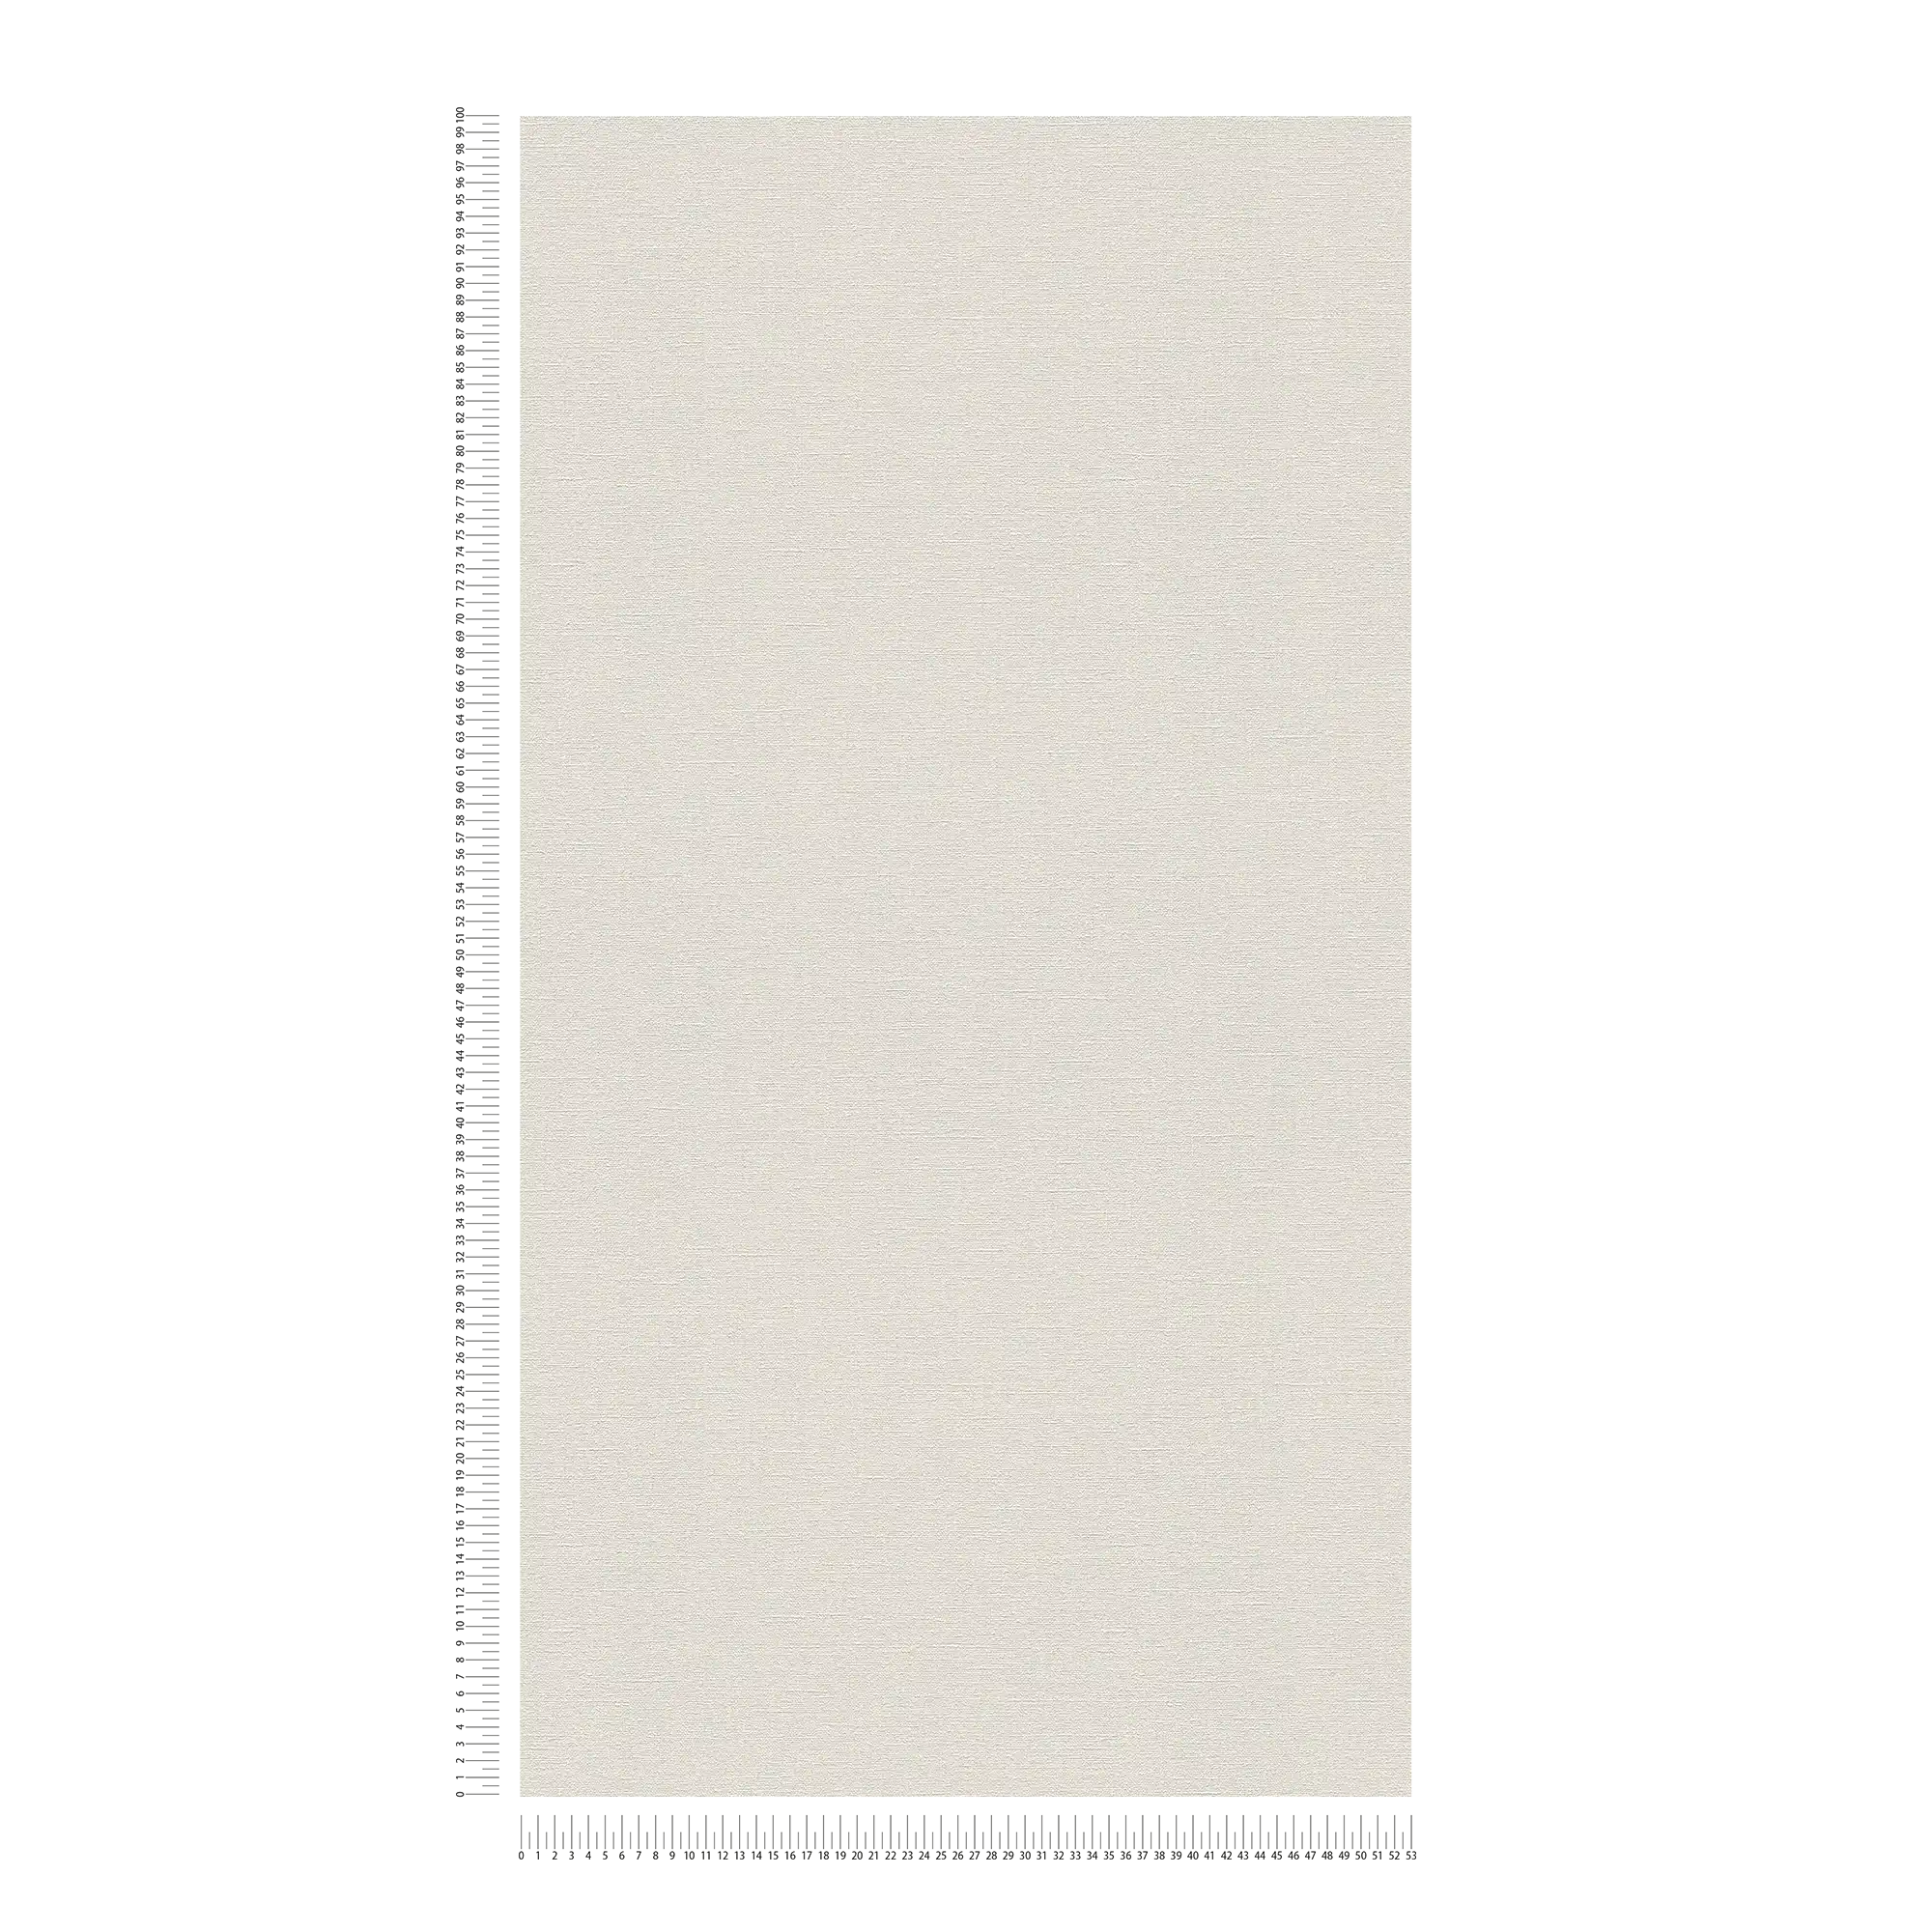             Light grey wallpaper plain & matte with texture pattern
        